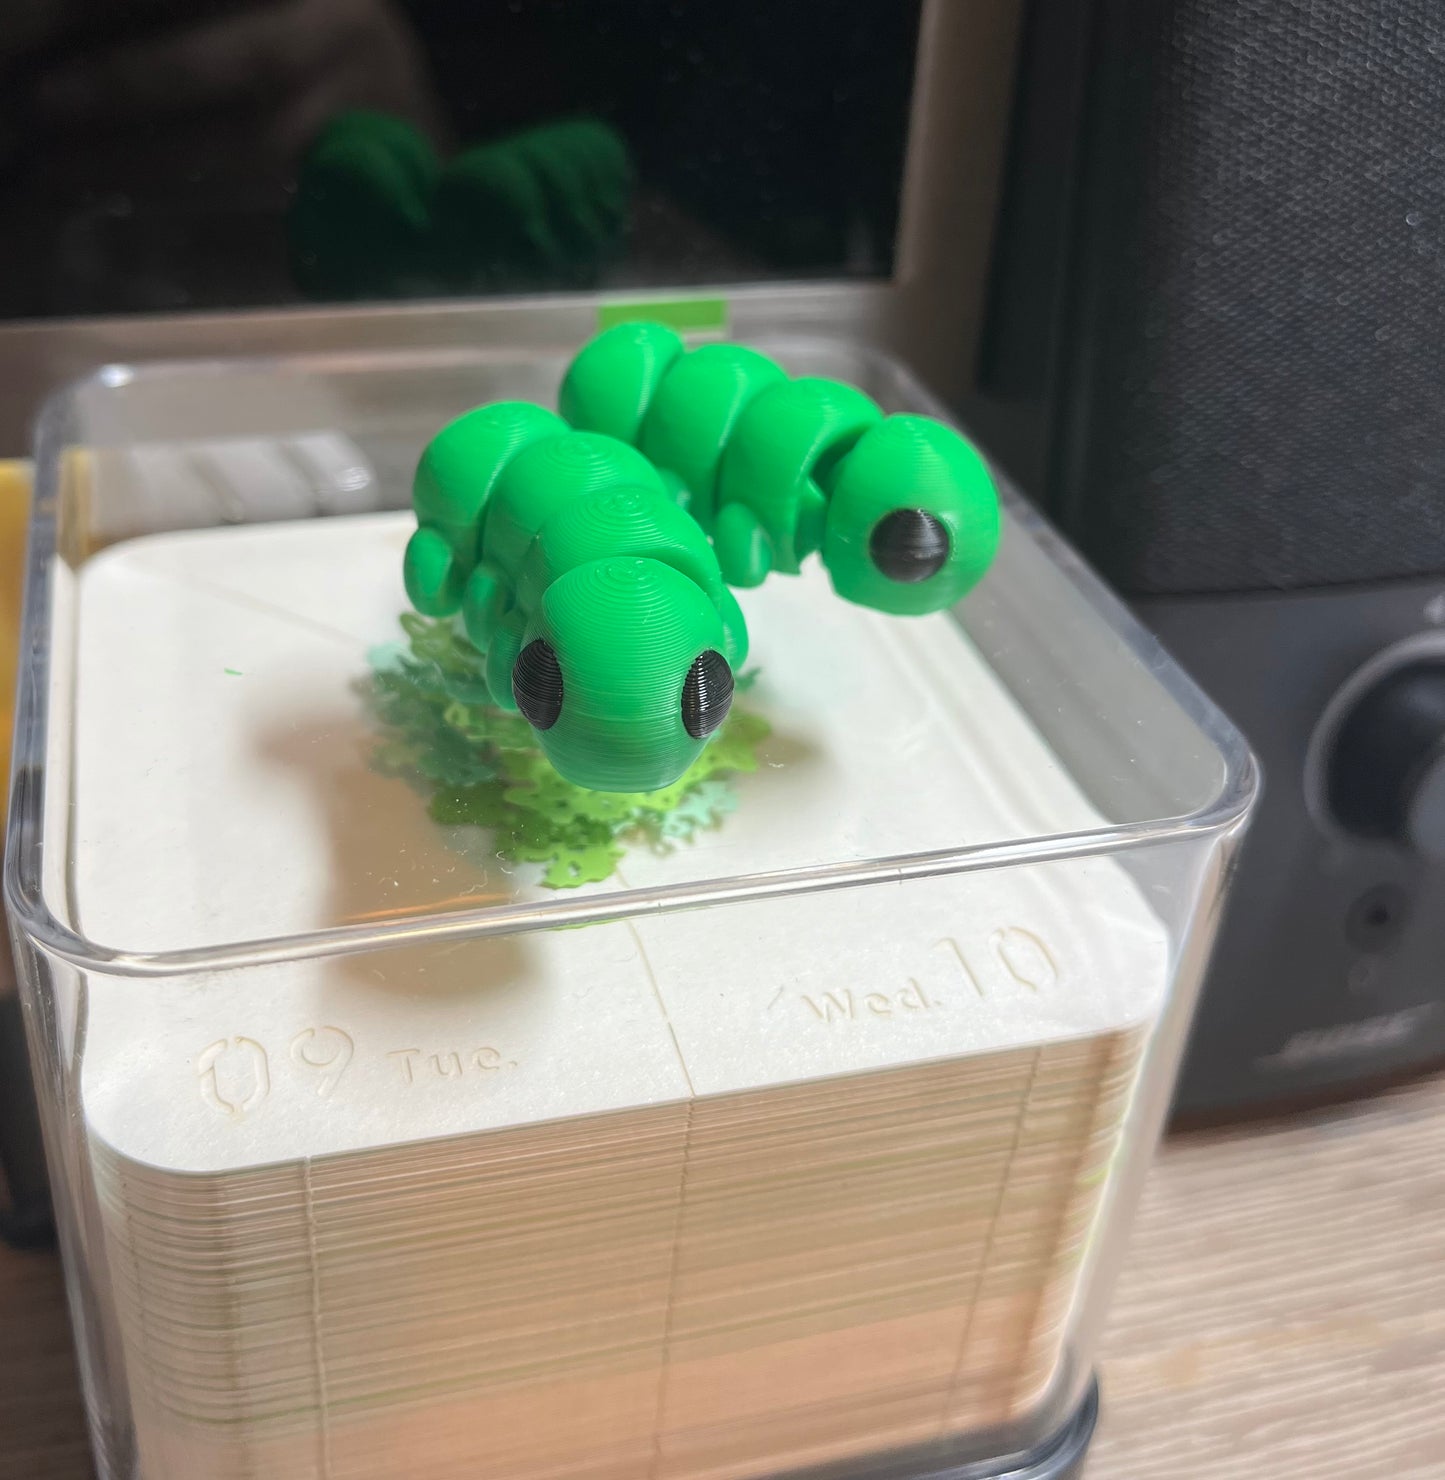 Small Caterpillar Desk Friend